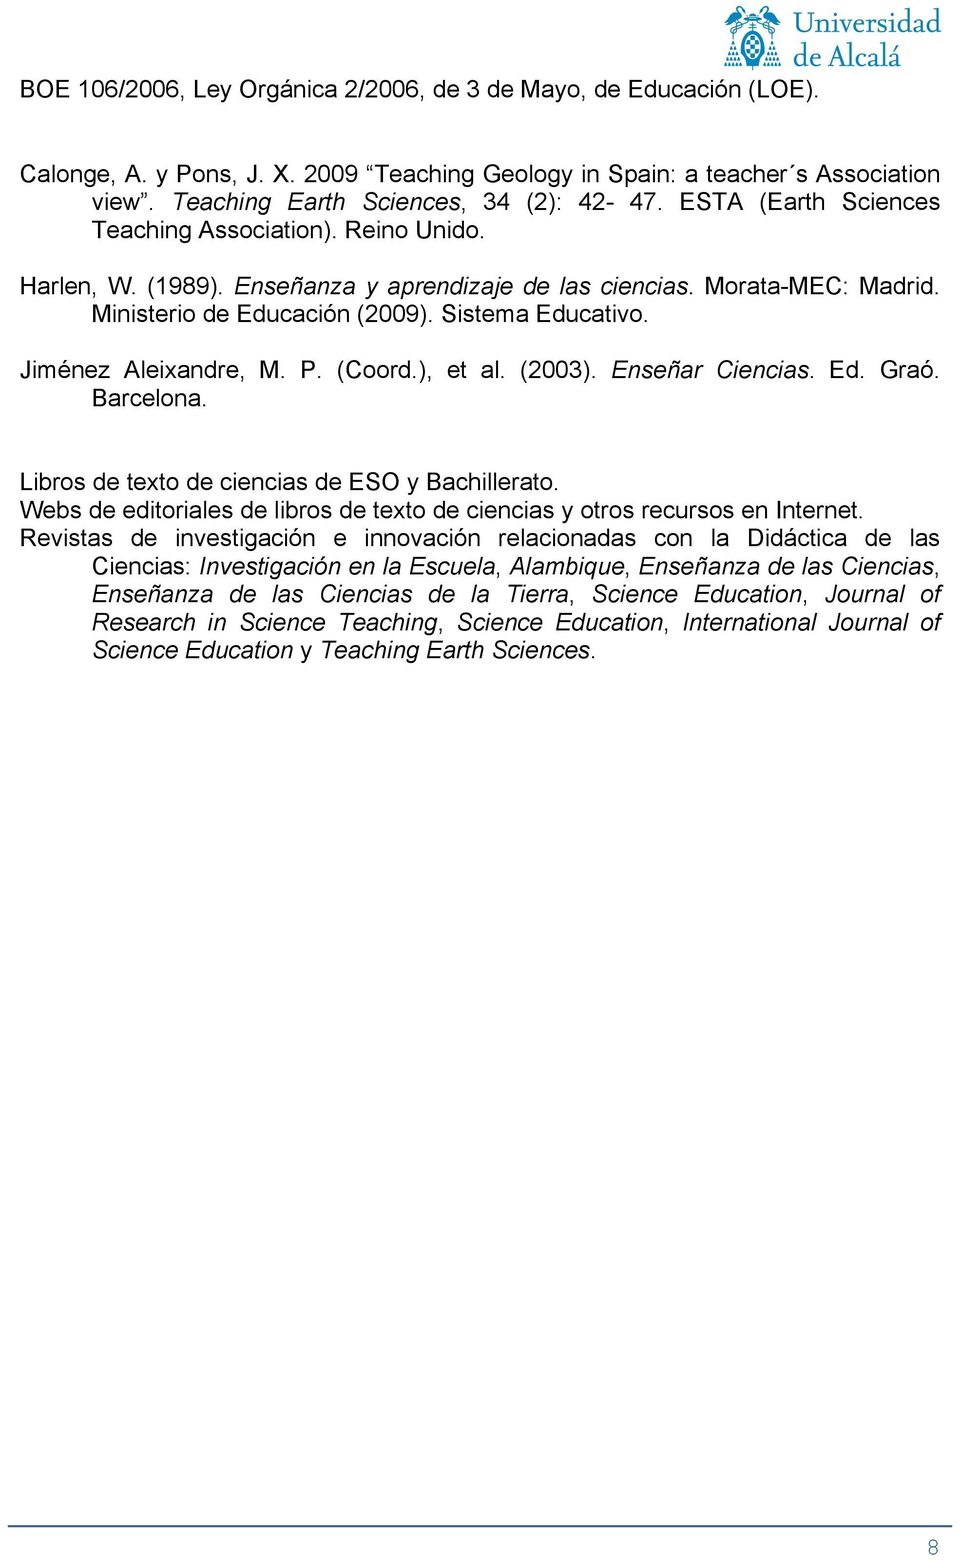 Jiménez Aleixandre, M. P. (Coord.), et al. (2003). Enseñar Ciencias. Ed. Graó. Barcelona. Libros de texto de ciencias de ESO y Bachillerato.